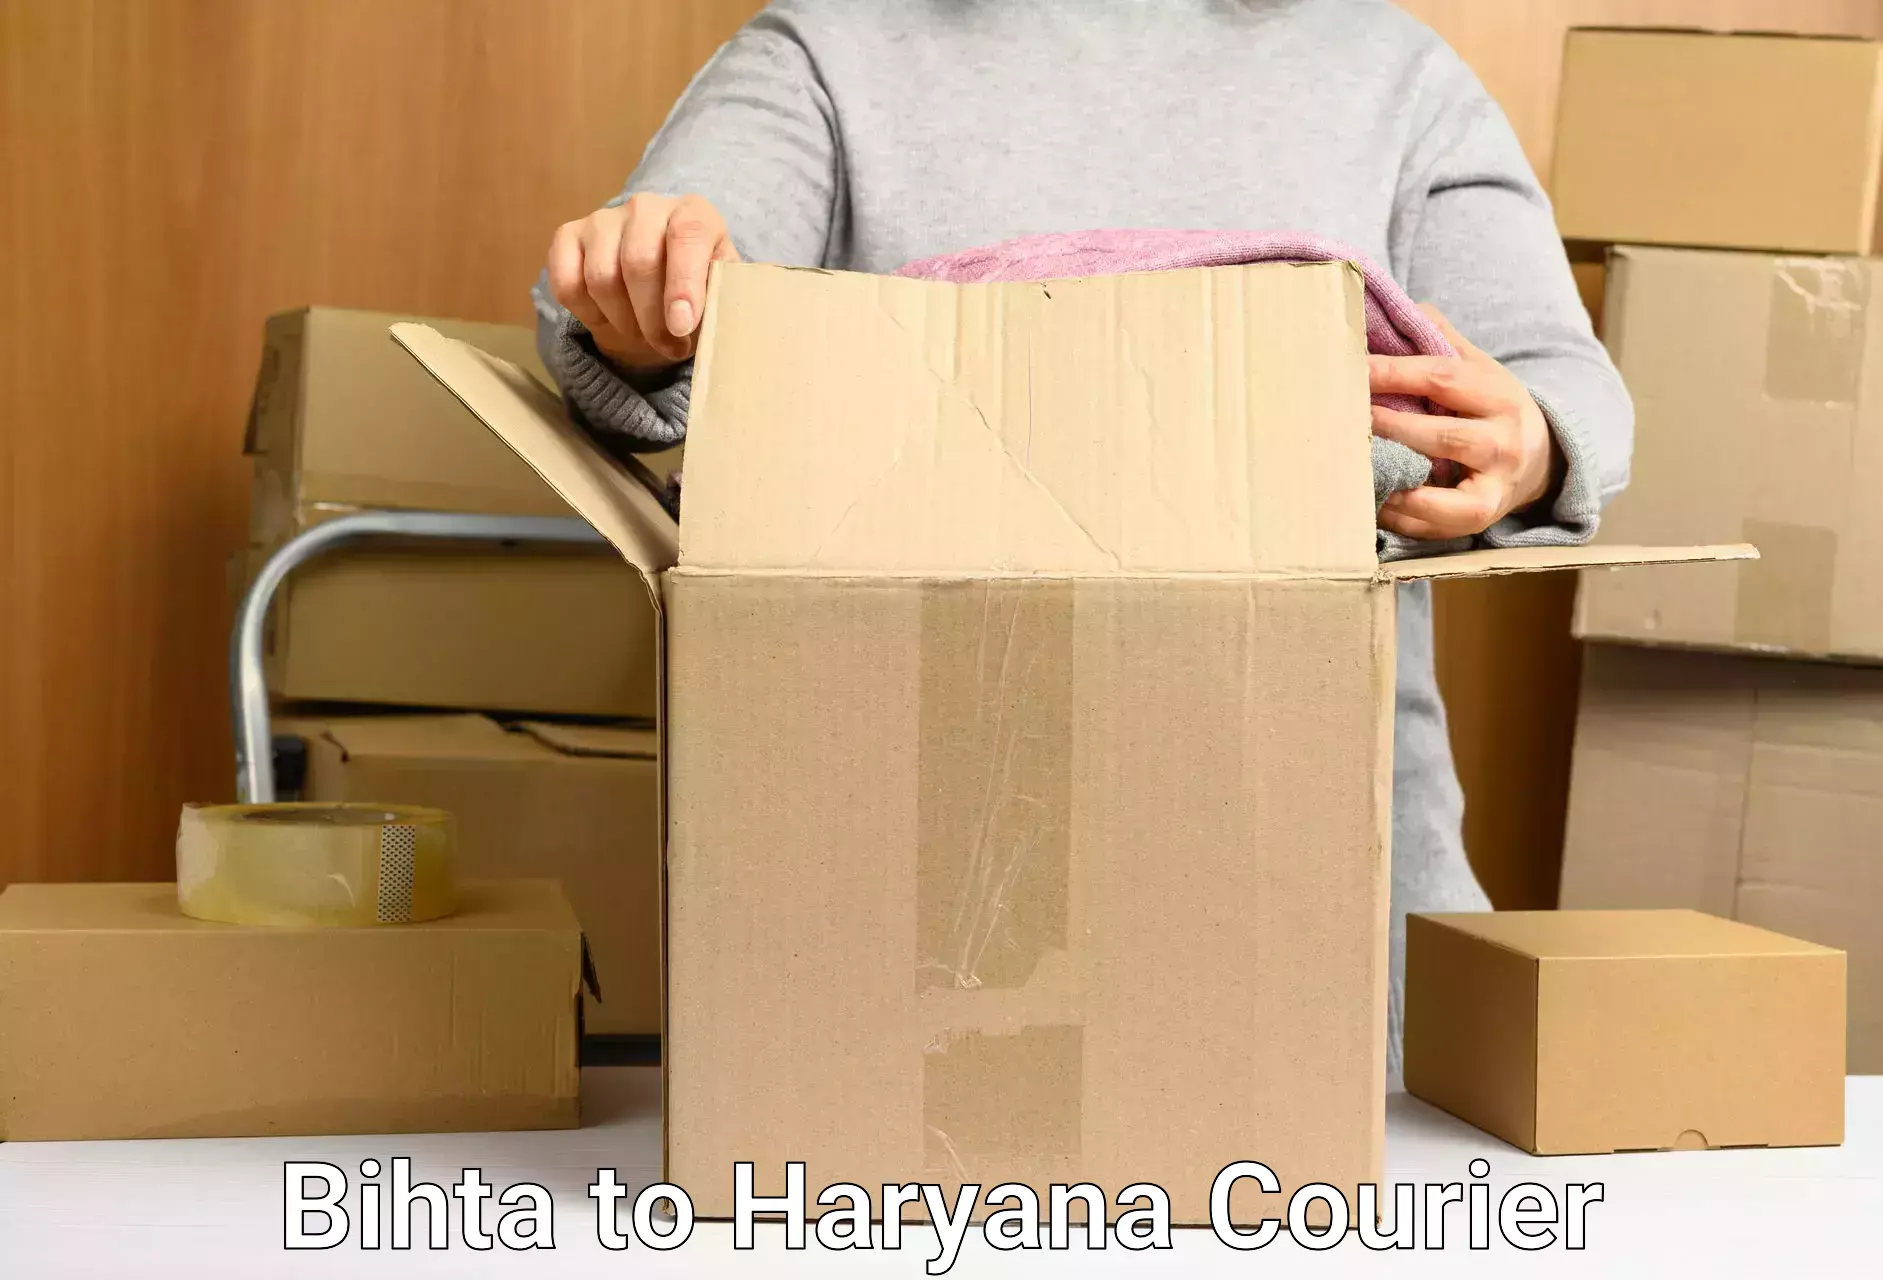 Next day courier Bihta to Haryana